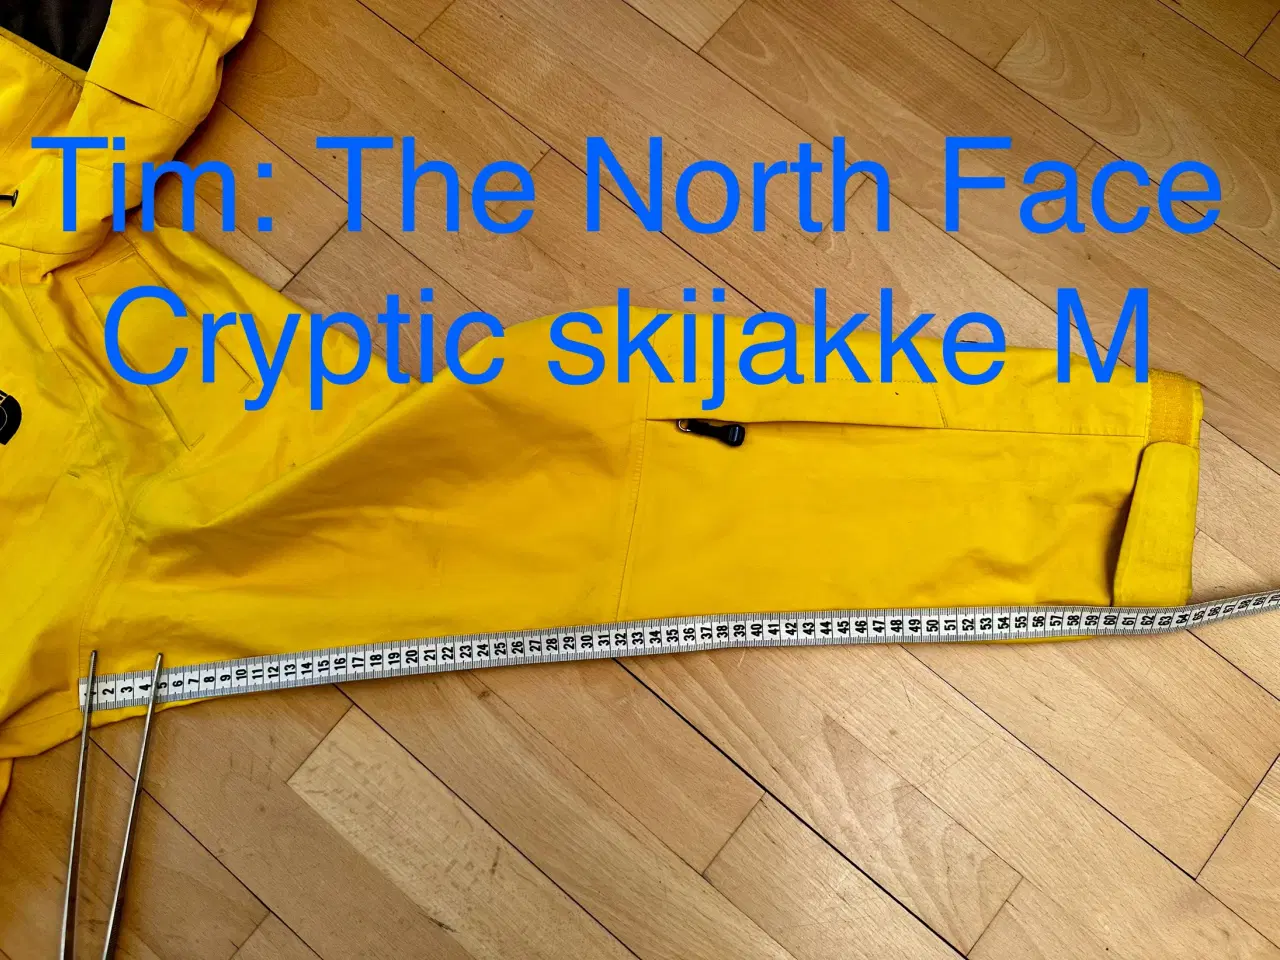 Billede 8 - The North Face Cryptic skijakke M 